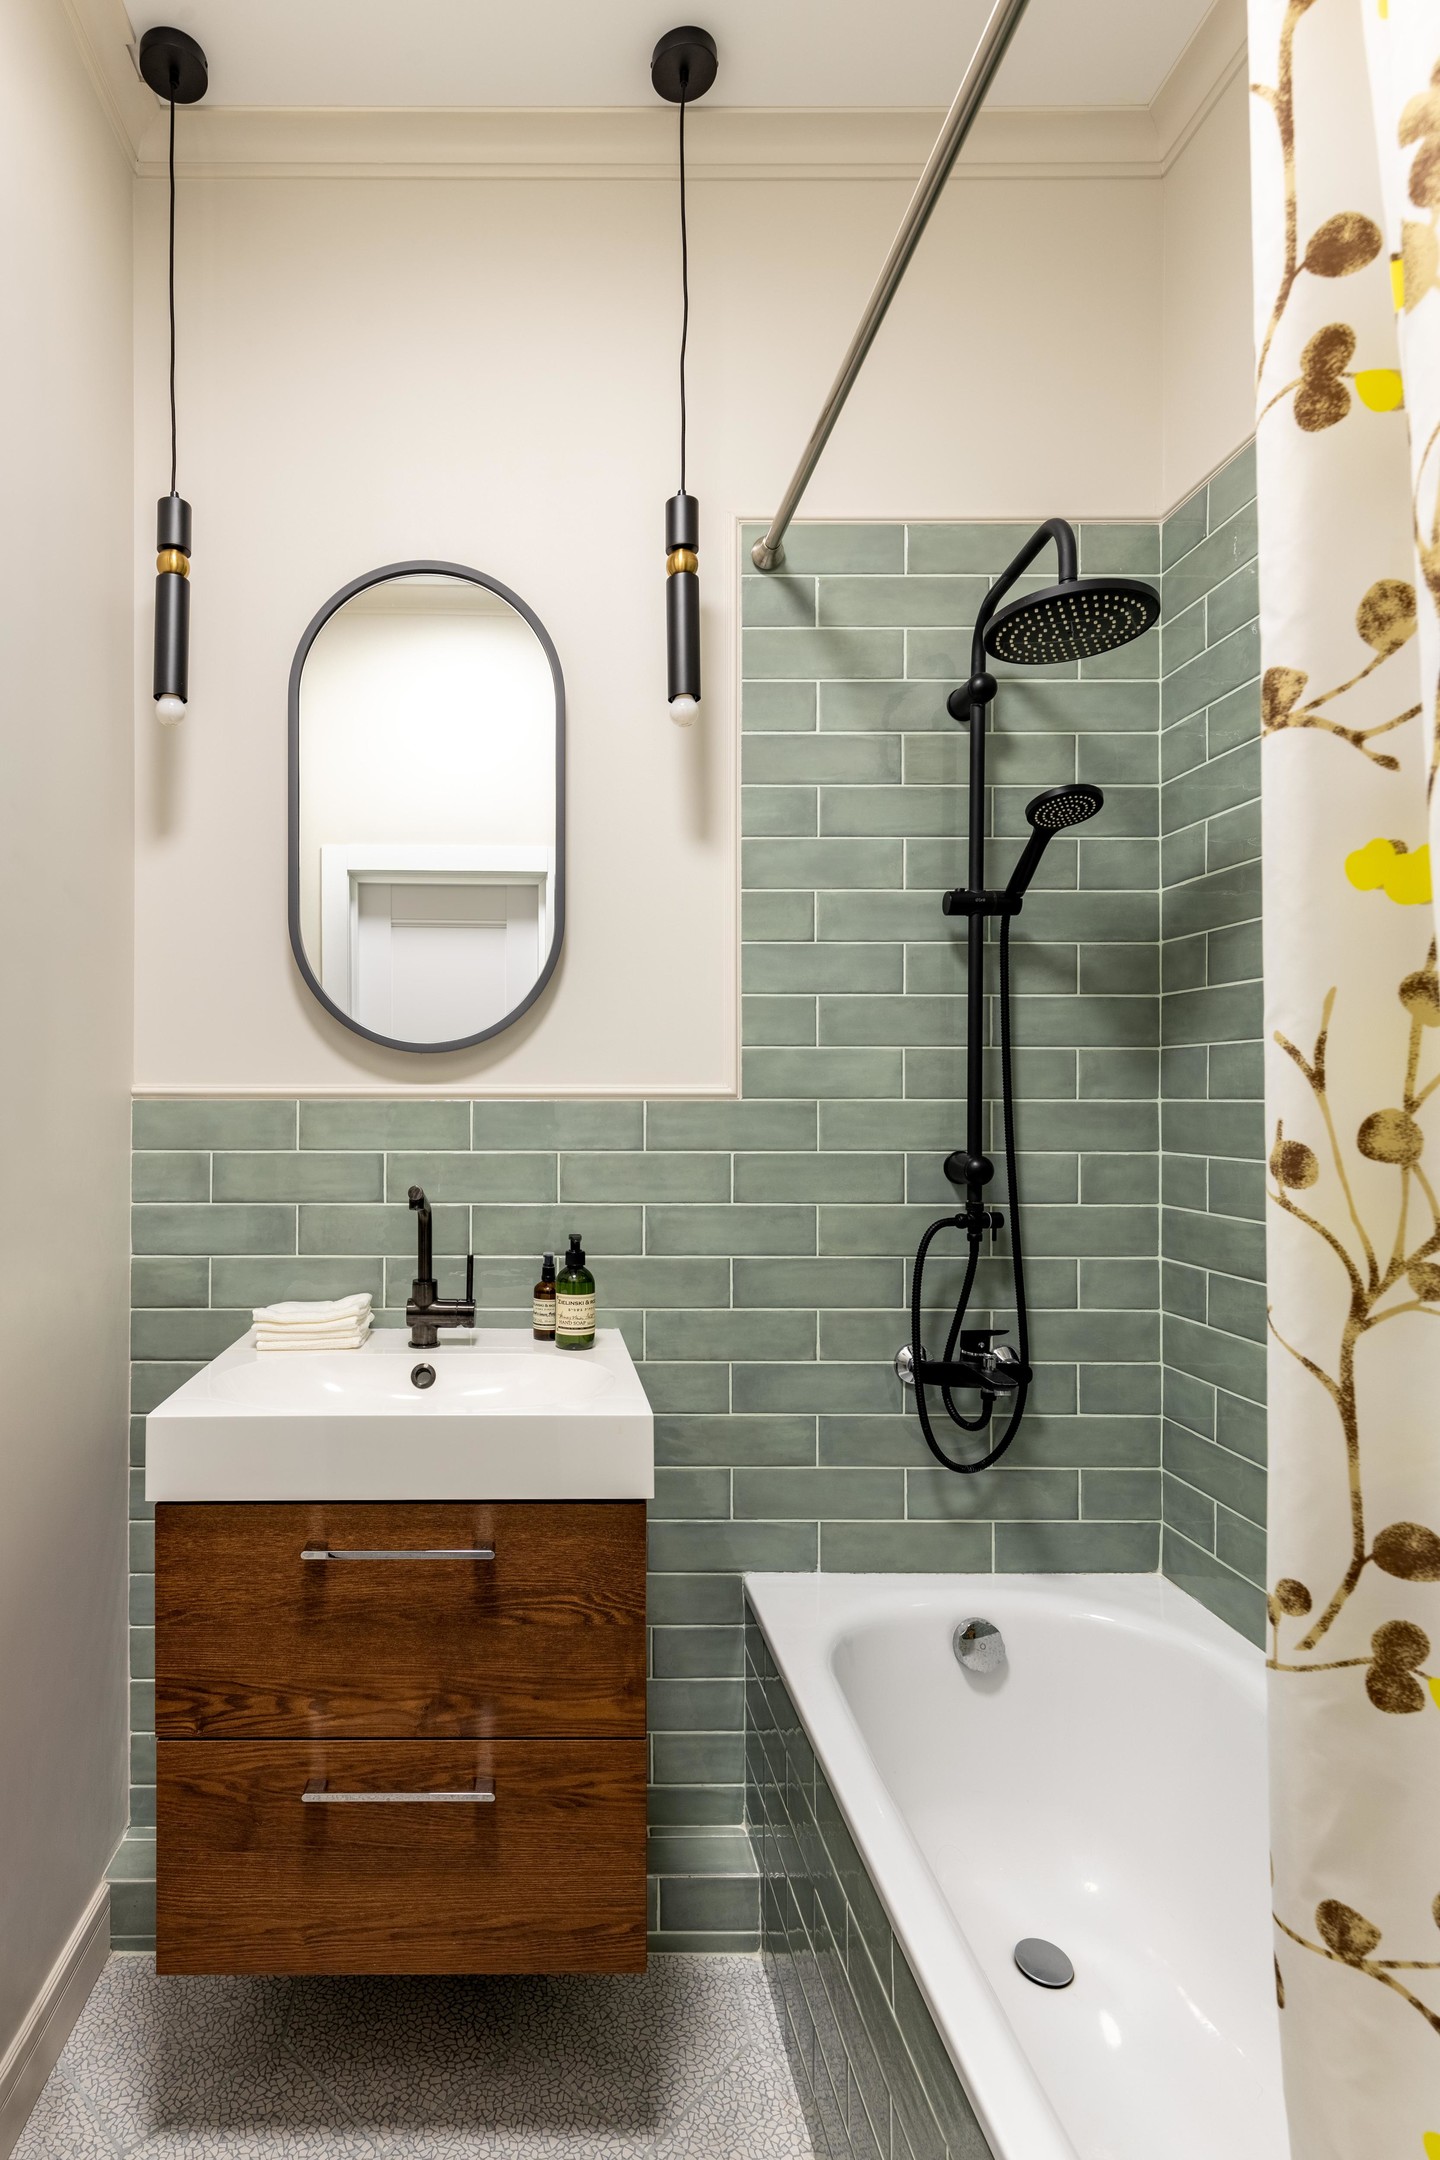 Khu vực phòng tắm phân vùng với toilet bằng rèm che vải nhẹ nhàng. Bức tường và bồn tắm ốp gạch màu xanh nhạt tươi mát. Hệ thống đèn thả trần cân xứng với gương hình oval tạo điểm nhấn cho phòng tắm nhỏ.